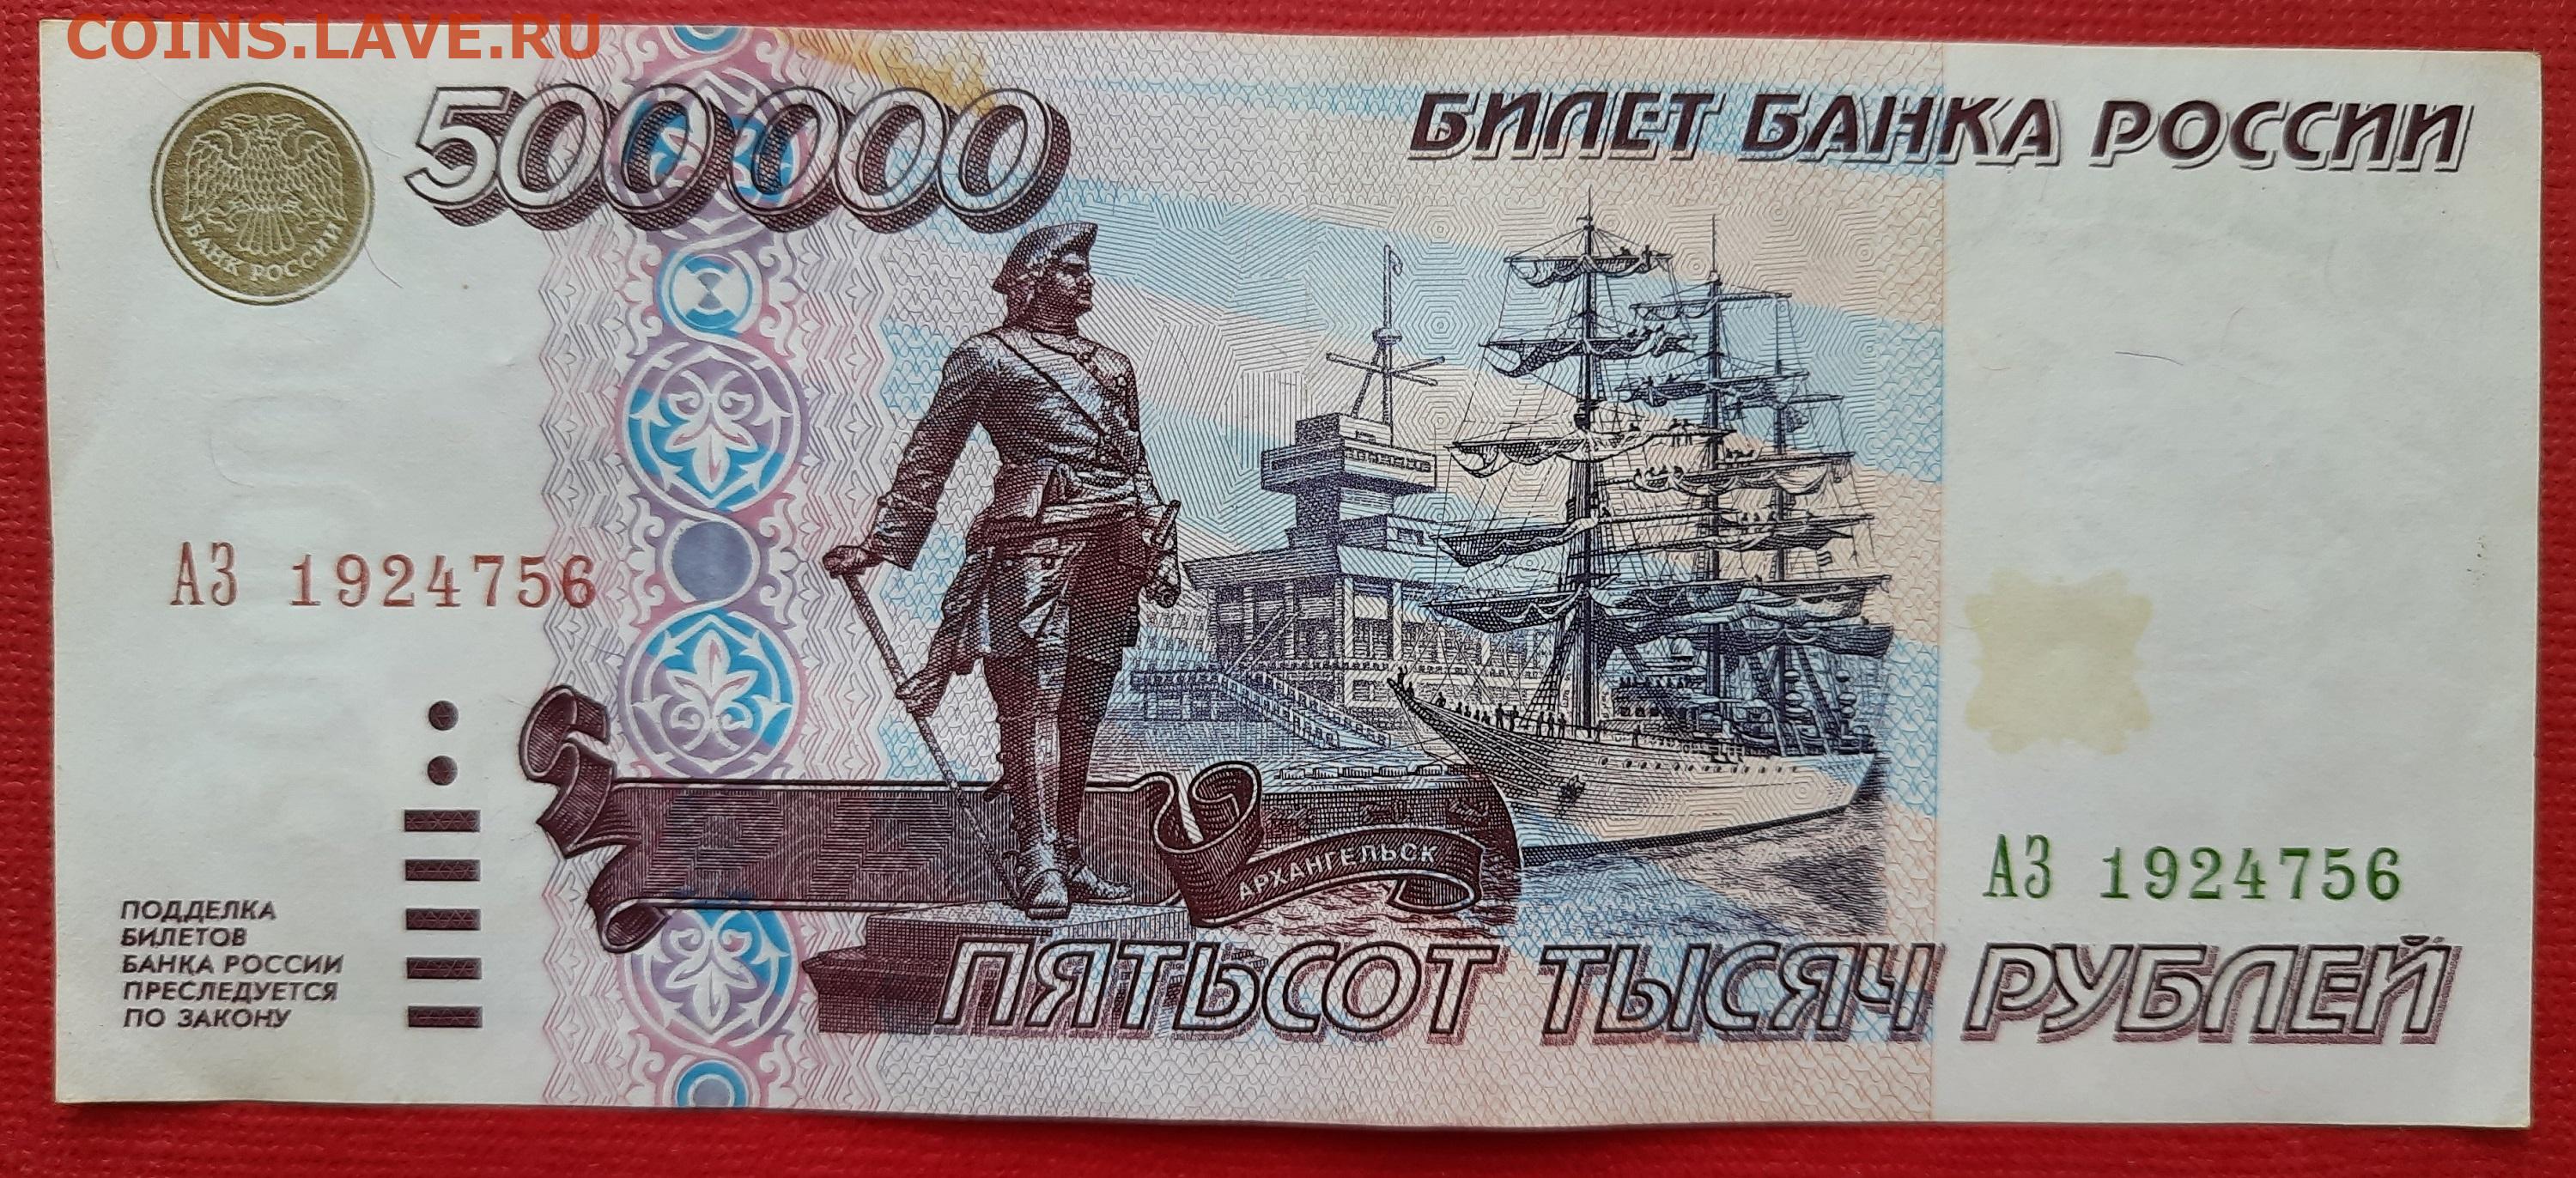 500 рублей с выводом. 500000 Рублей 1995 года. Пятьсот тысяч рублей купюра 1995. Купюра 500 рублей. 500 000 Рублей купюра.